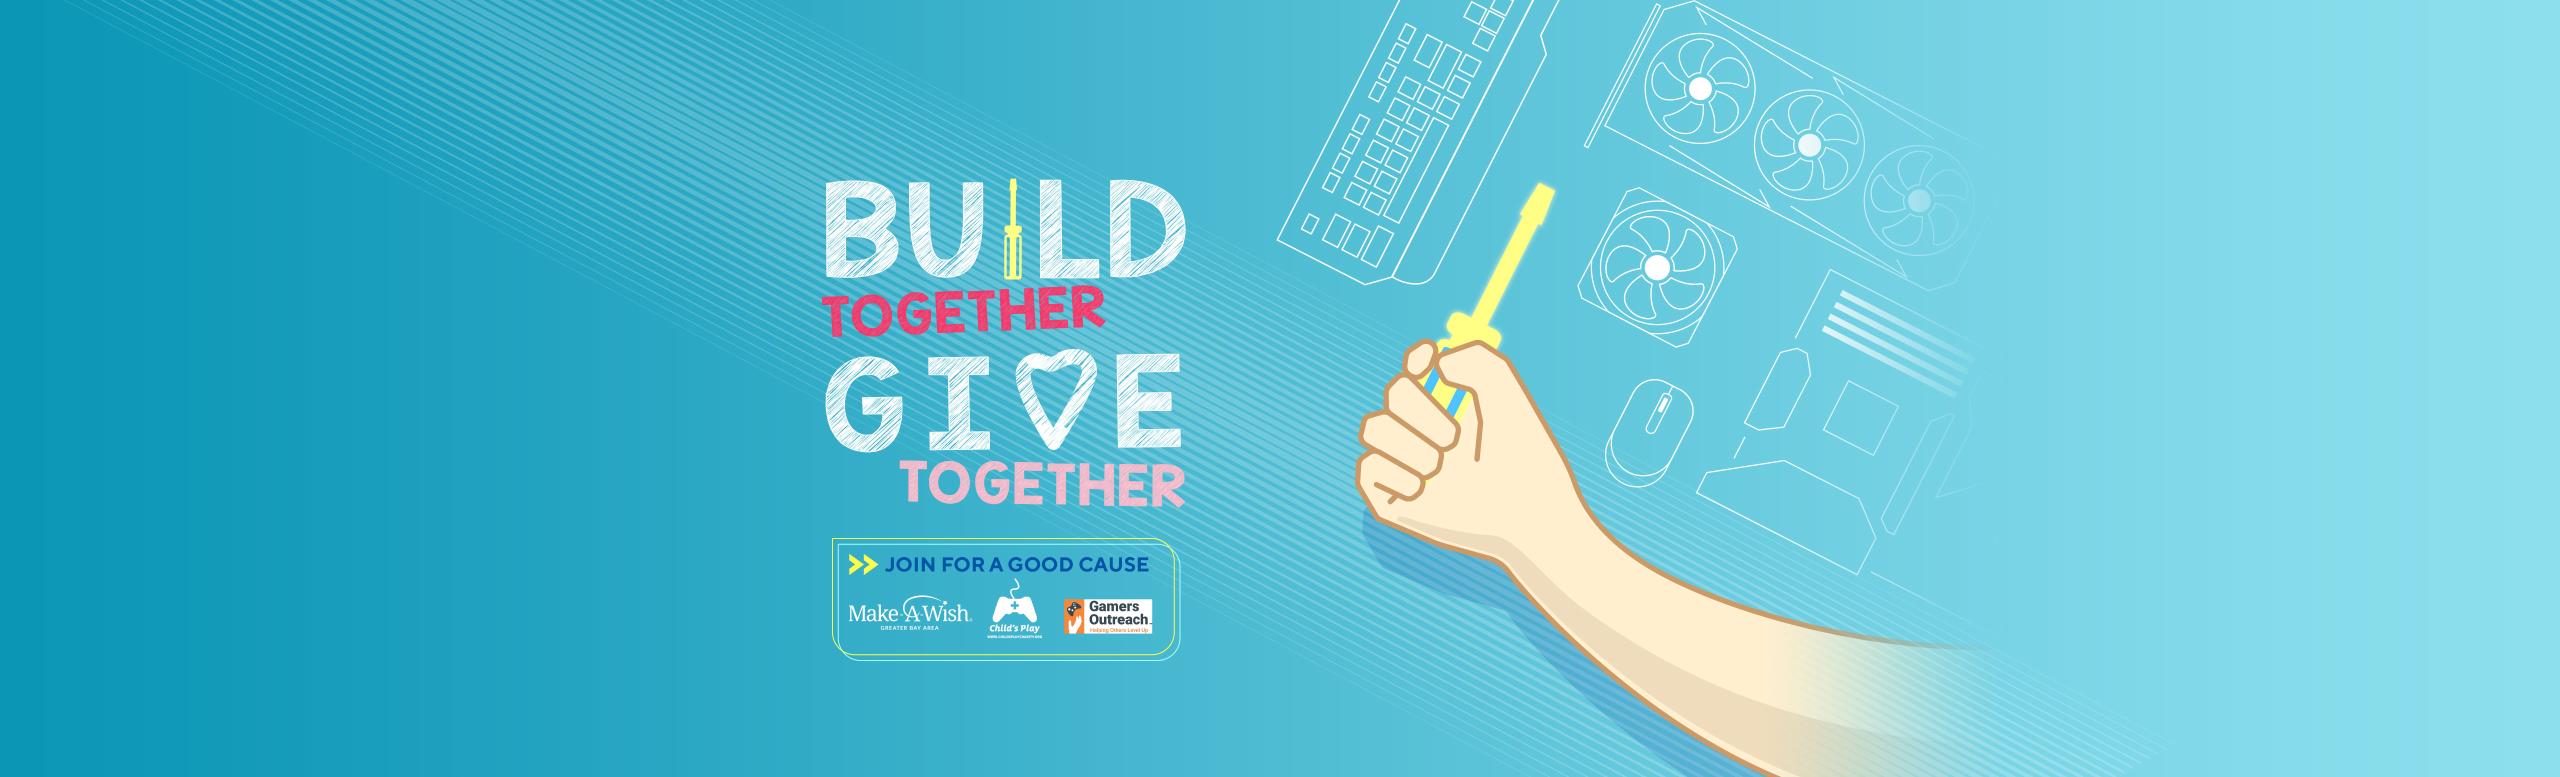 build-together-give-together